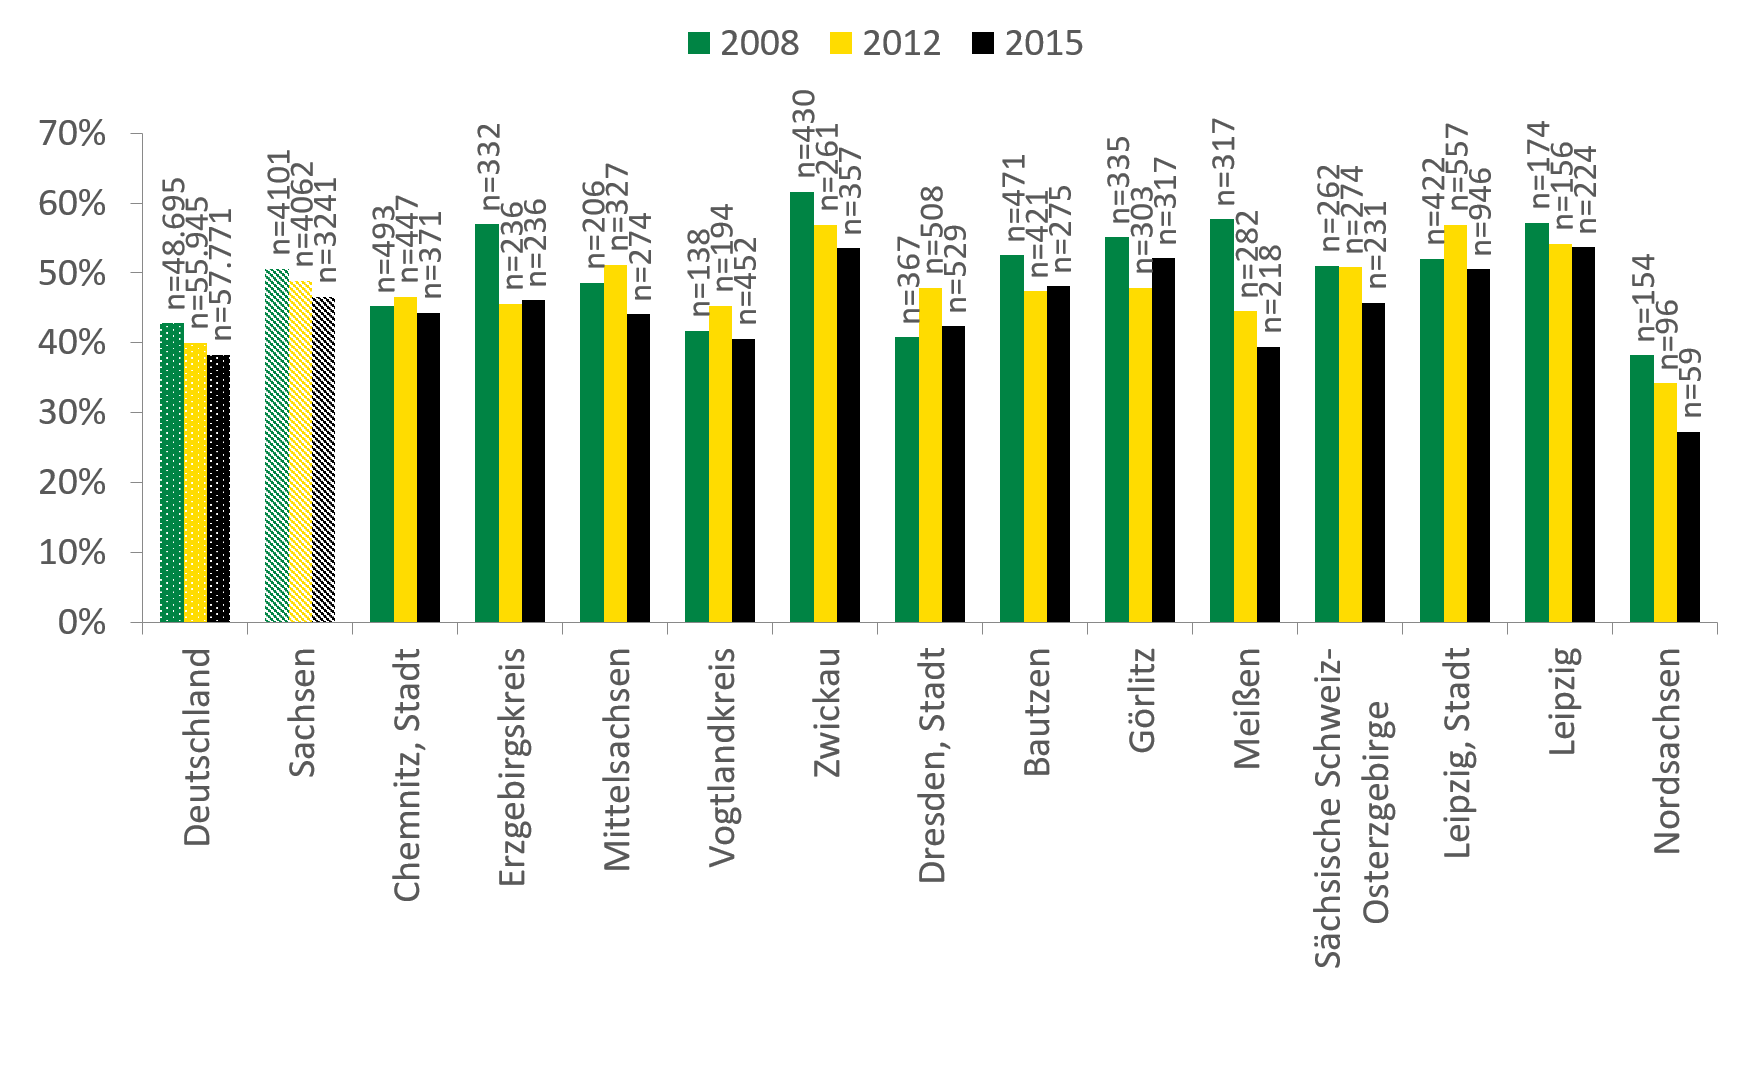 Sowohl in Deutschland als auch in Sachsen ist der Anteil der arbeitslosen Klientel in den letzten Jahren gesunken, mit knapp 45 Prozent liegt dieser in Sachsen jedoch um circa 5 Prozent höher. Mit Ausnahme von Görlitz und Dresden Stadt sind die Anteile in allen Landkreisen und kreisfreien Städten Sachsens in den letzten Jahren gesunken. In Meißen ist der Anteil seit 2015 um fast 20 Prozent gesunken. In Zwickau ist im Jahr 2015 noch über die Hälfte der Klientel arbeitslos, in Nordsachsen nur noch knapp 25 Prozent.